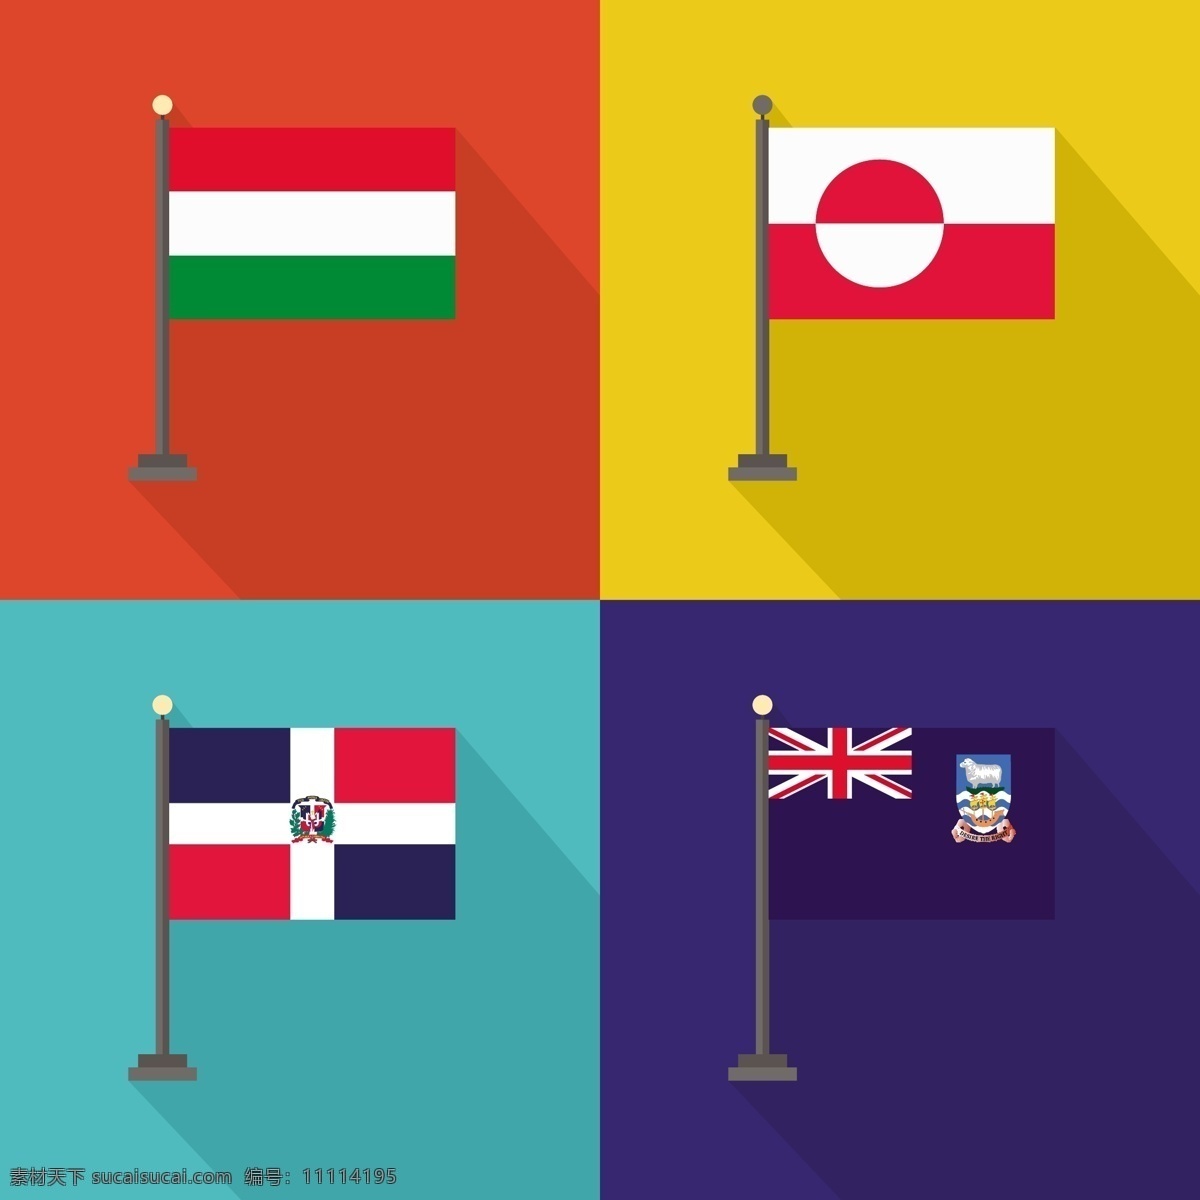 匈牙利 格陵兰 多明尼 加 共和国 福克兰群岛 旗帜 世界国旗 国家 国际 爱国 状态 民族 多米尼加共和国 群岛 格陵兰岛 多米尼加 爱国主义 白色